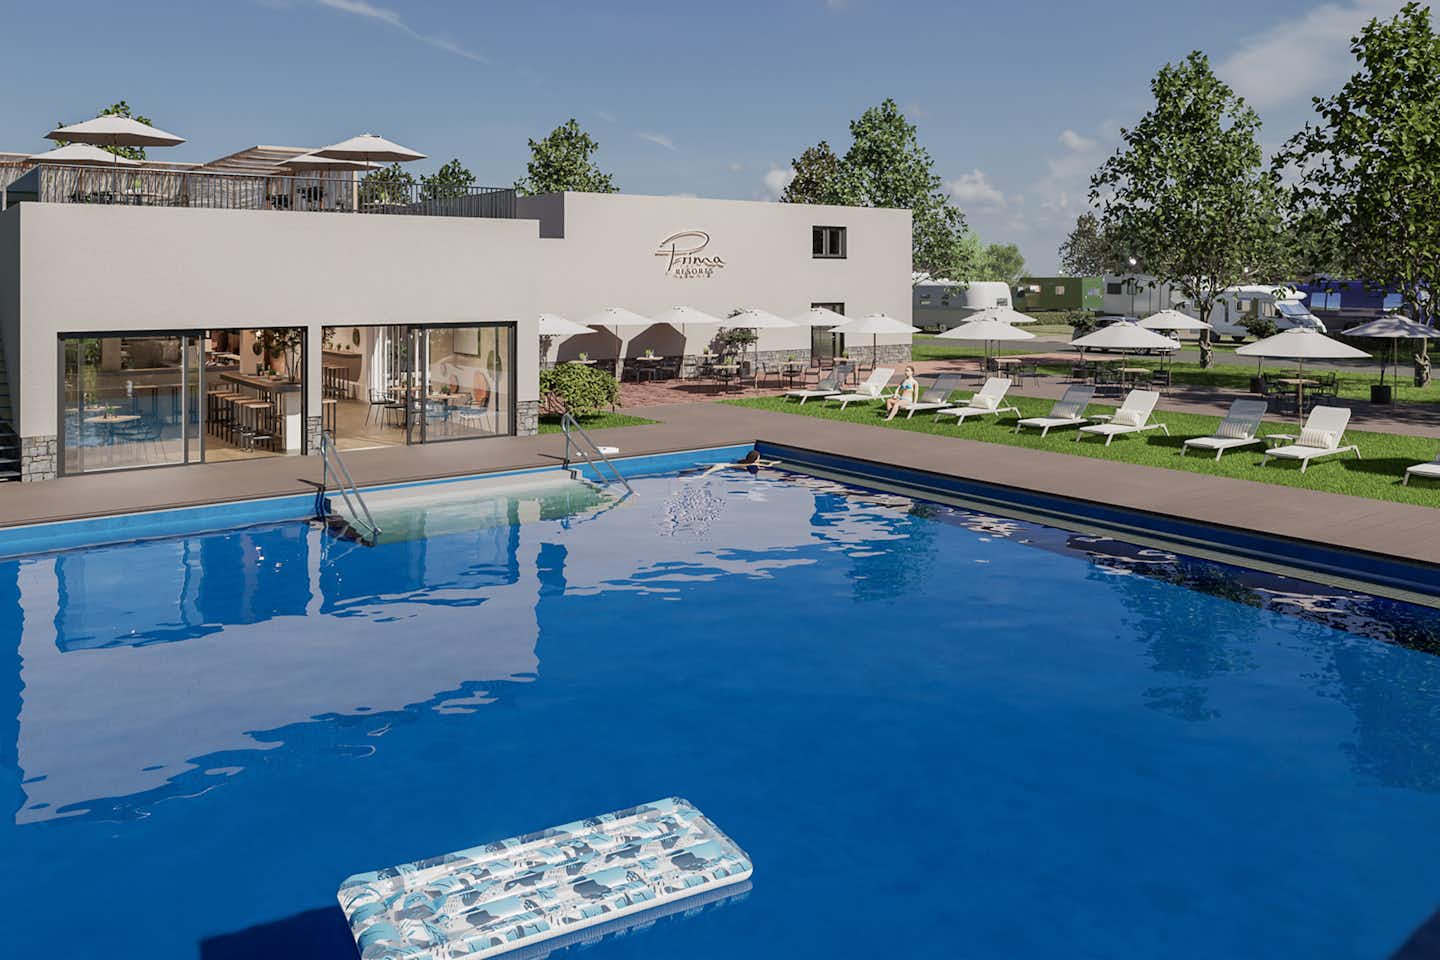 Prima Resort Boddenblick  - Pool im Freien mit Liegestühlen und Sonnenschirmen